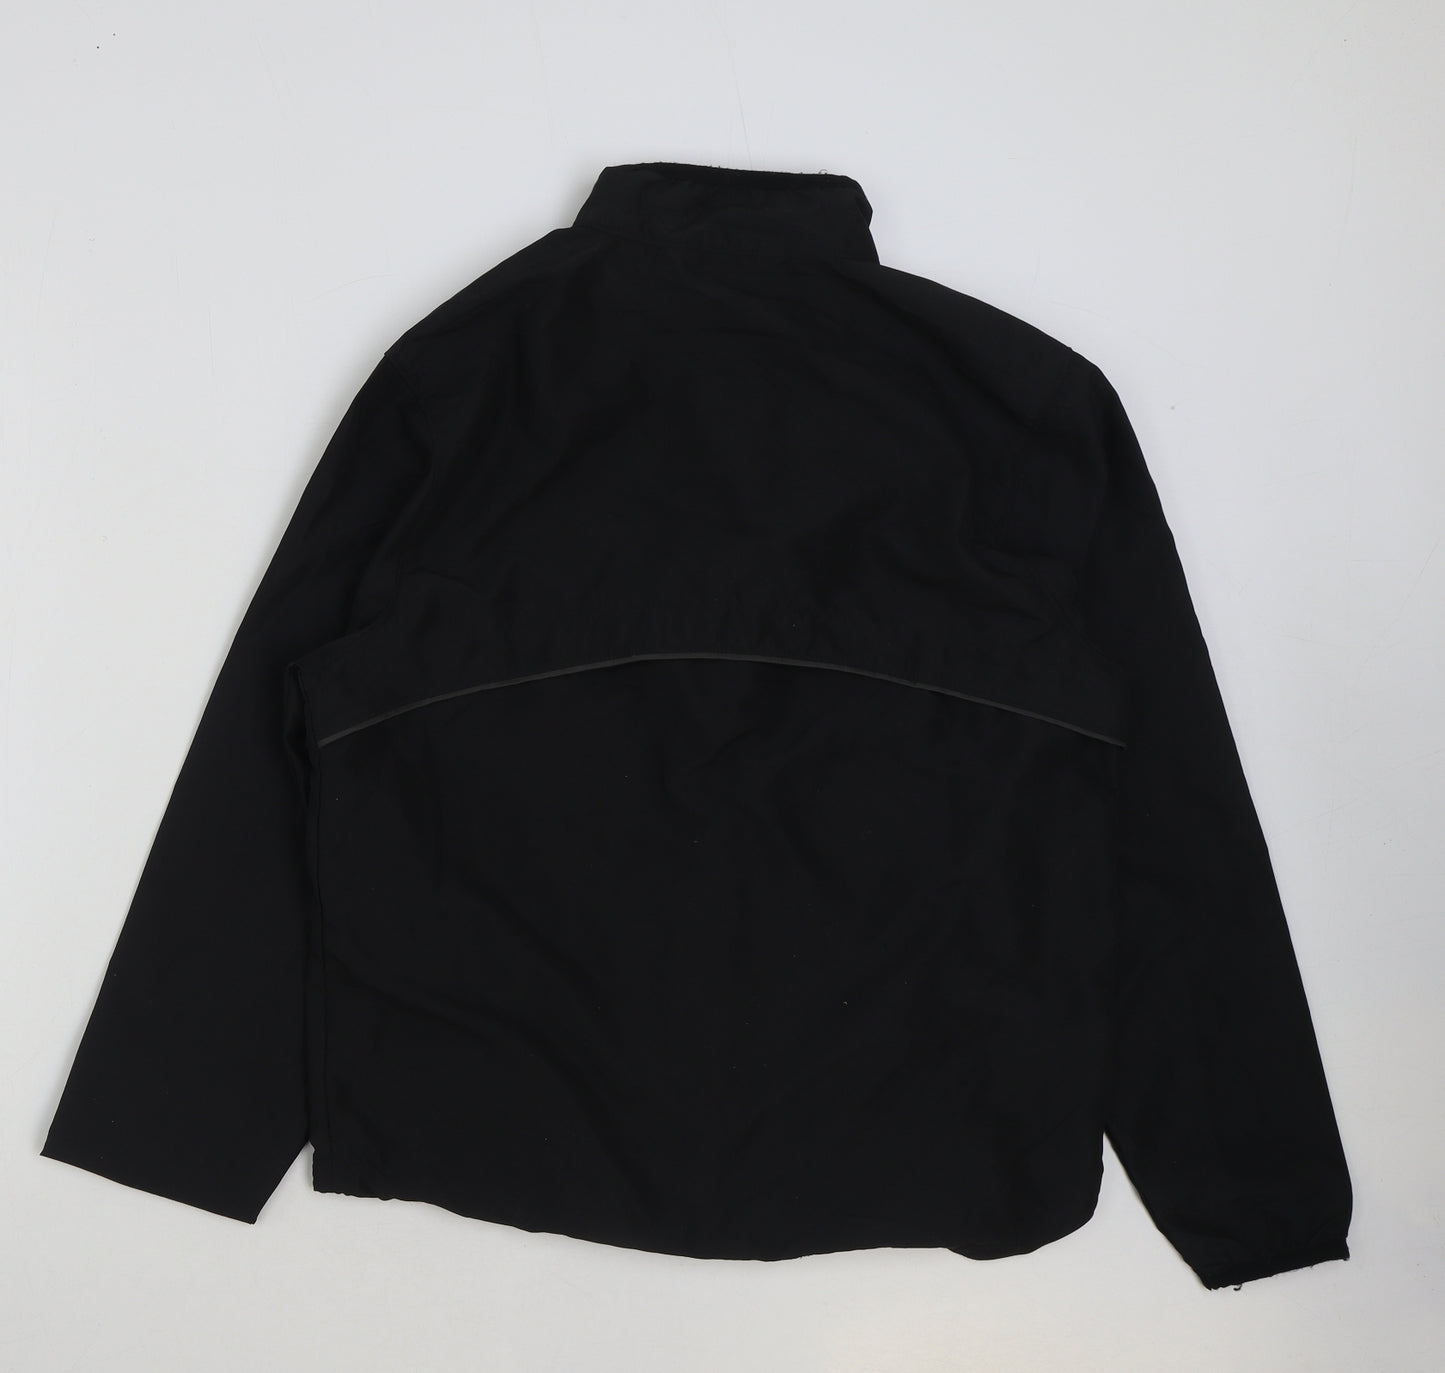 Jac Mens Black Rain Coat Coat Size L Zip